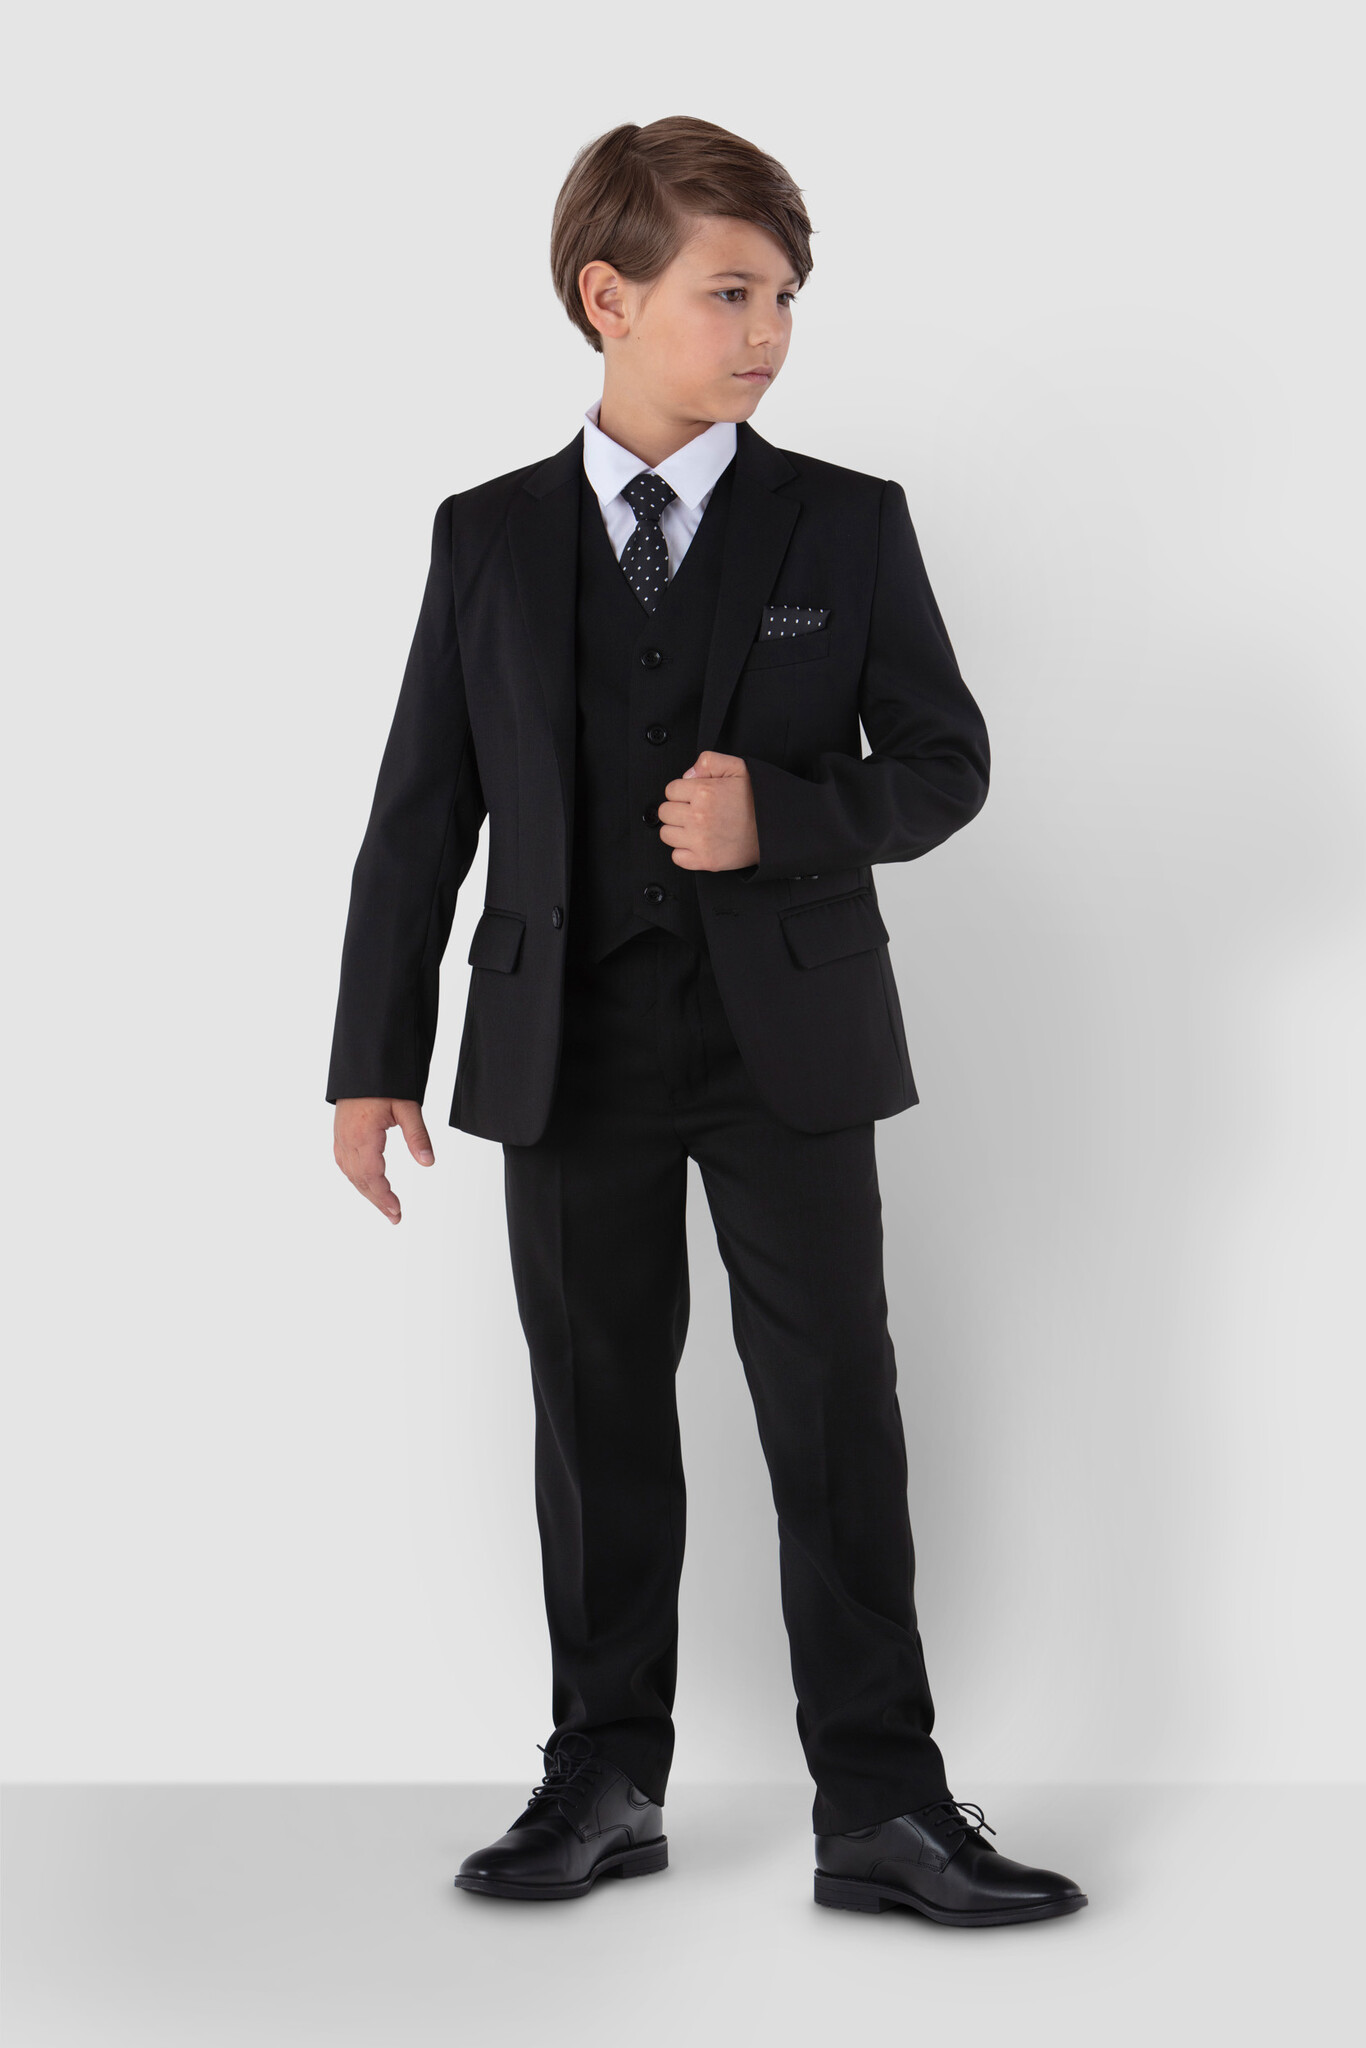 Jungen schwarz 6-teilig, Anzug, Melli-Trends -